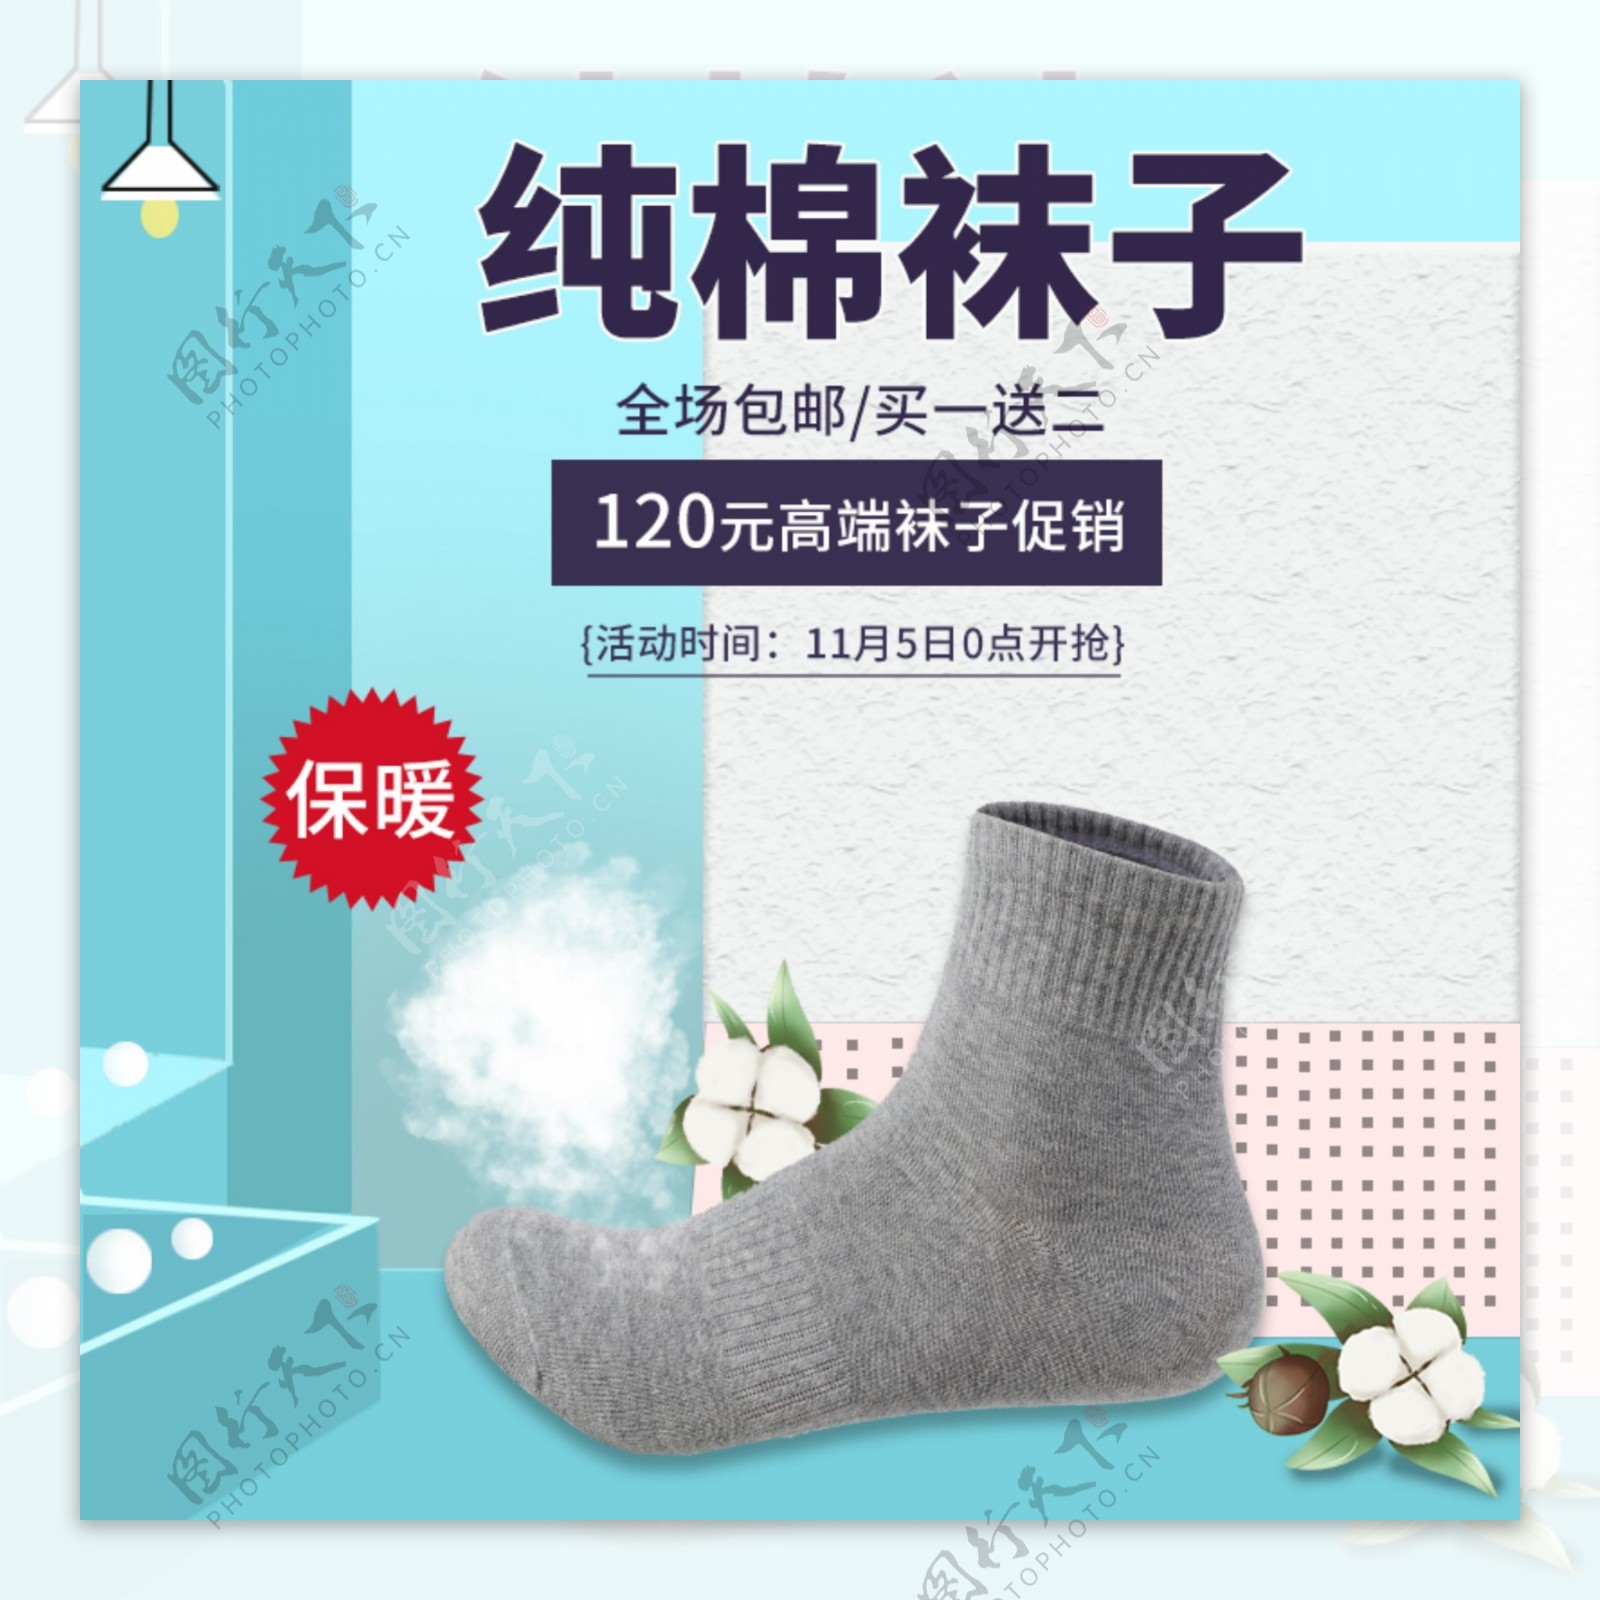 2019春冬男女纯棉保暖袜子促销活动主图